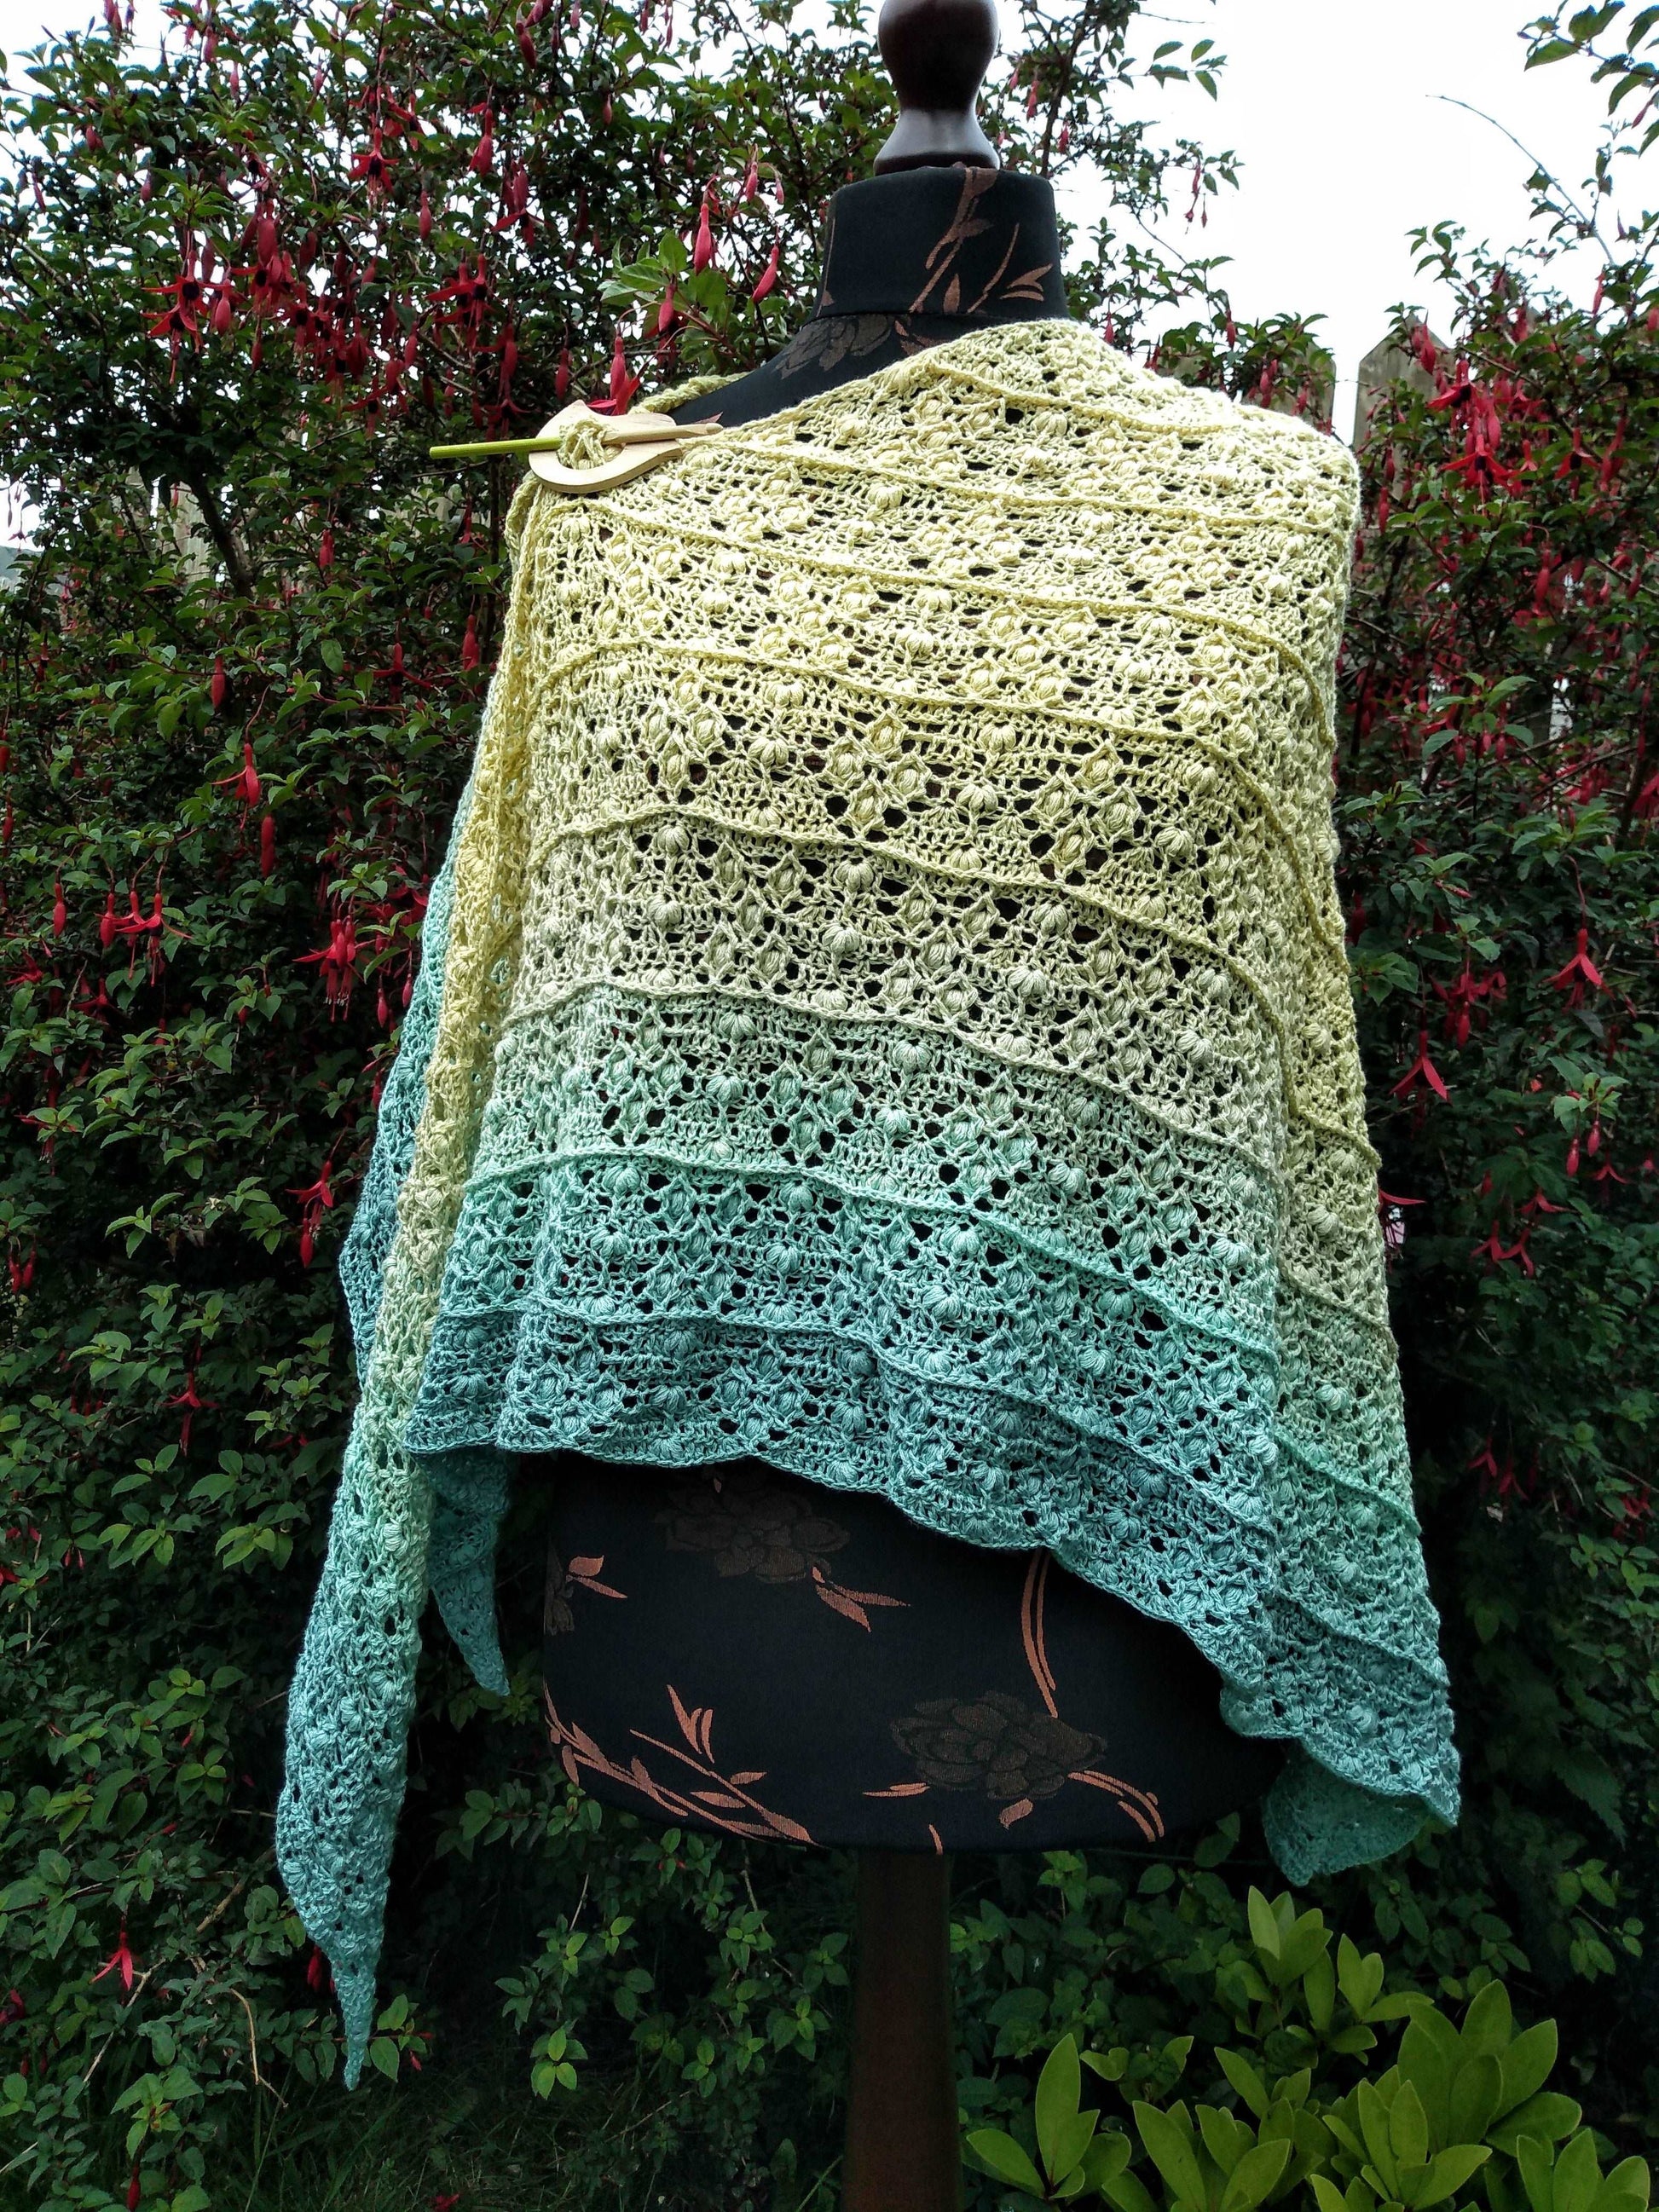 Silento shawl pattern by Dreamer- Szydełkowe Marzenia